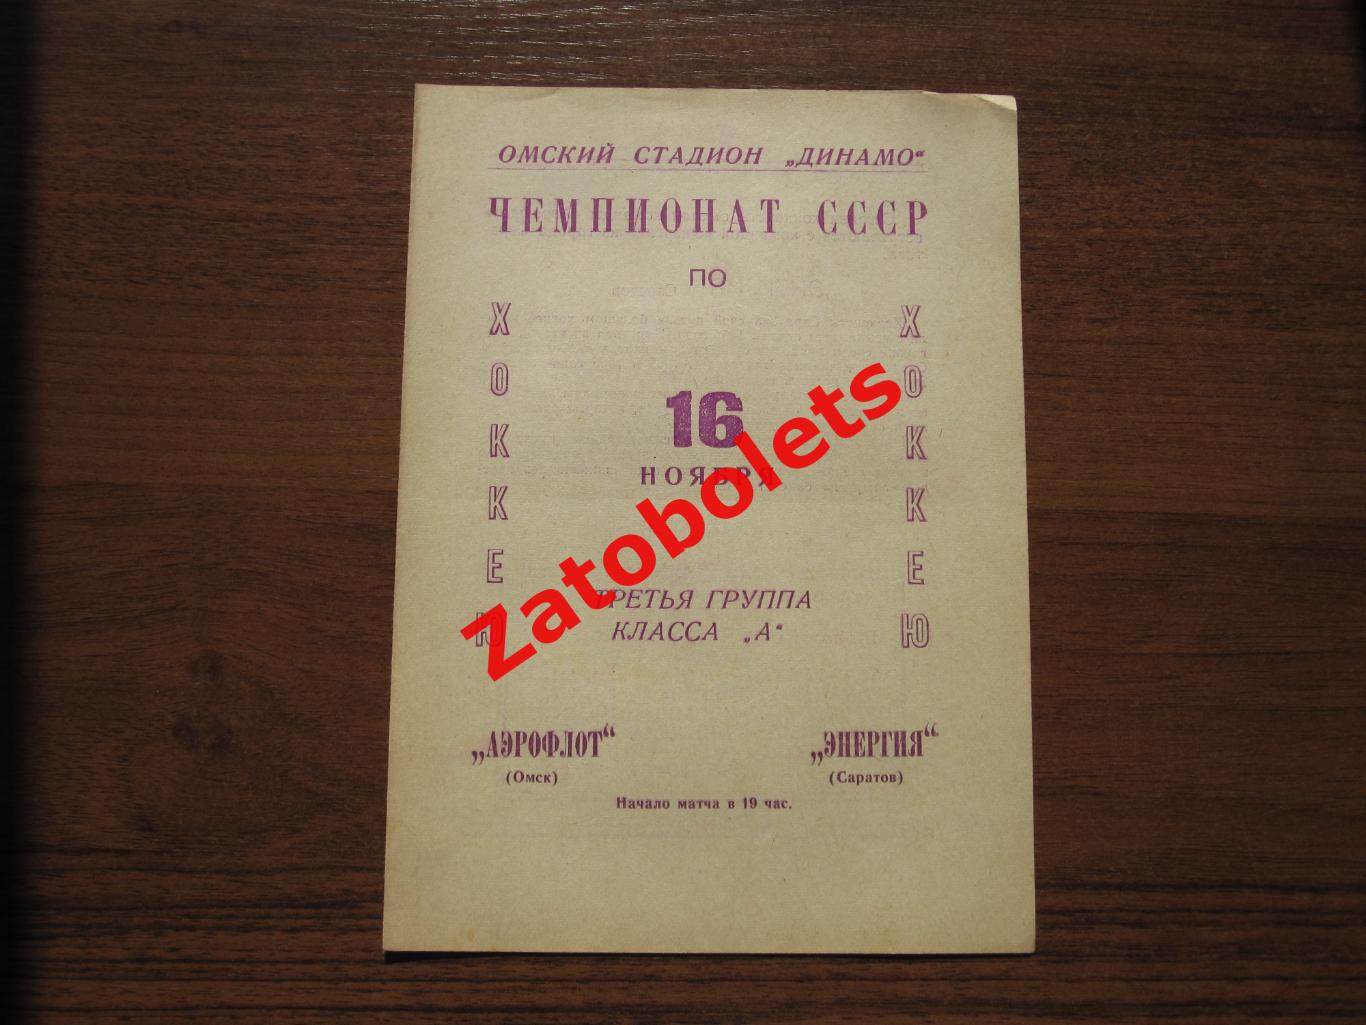 Аэрофлот Омск - Энергия Саратов 16.11.1966